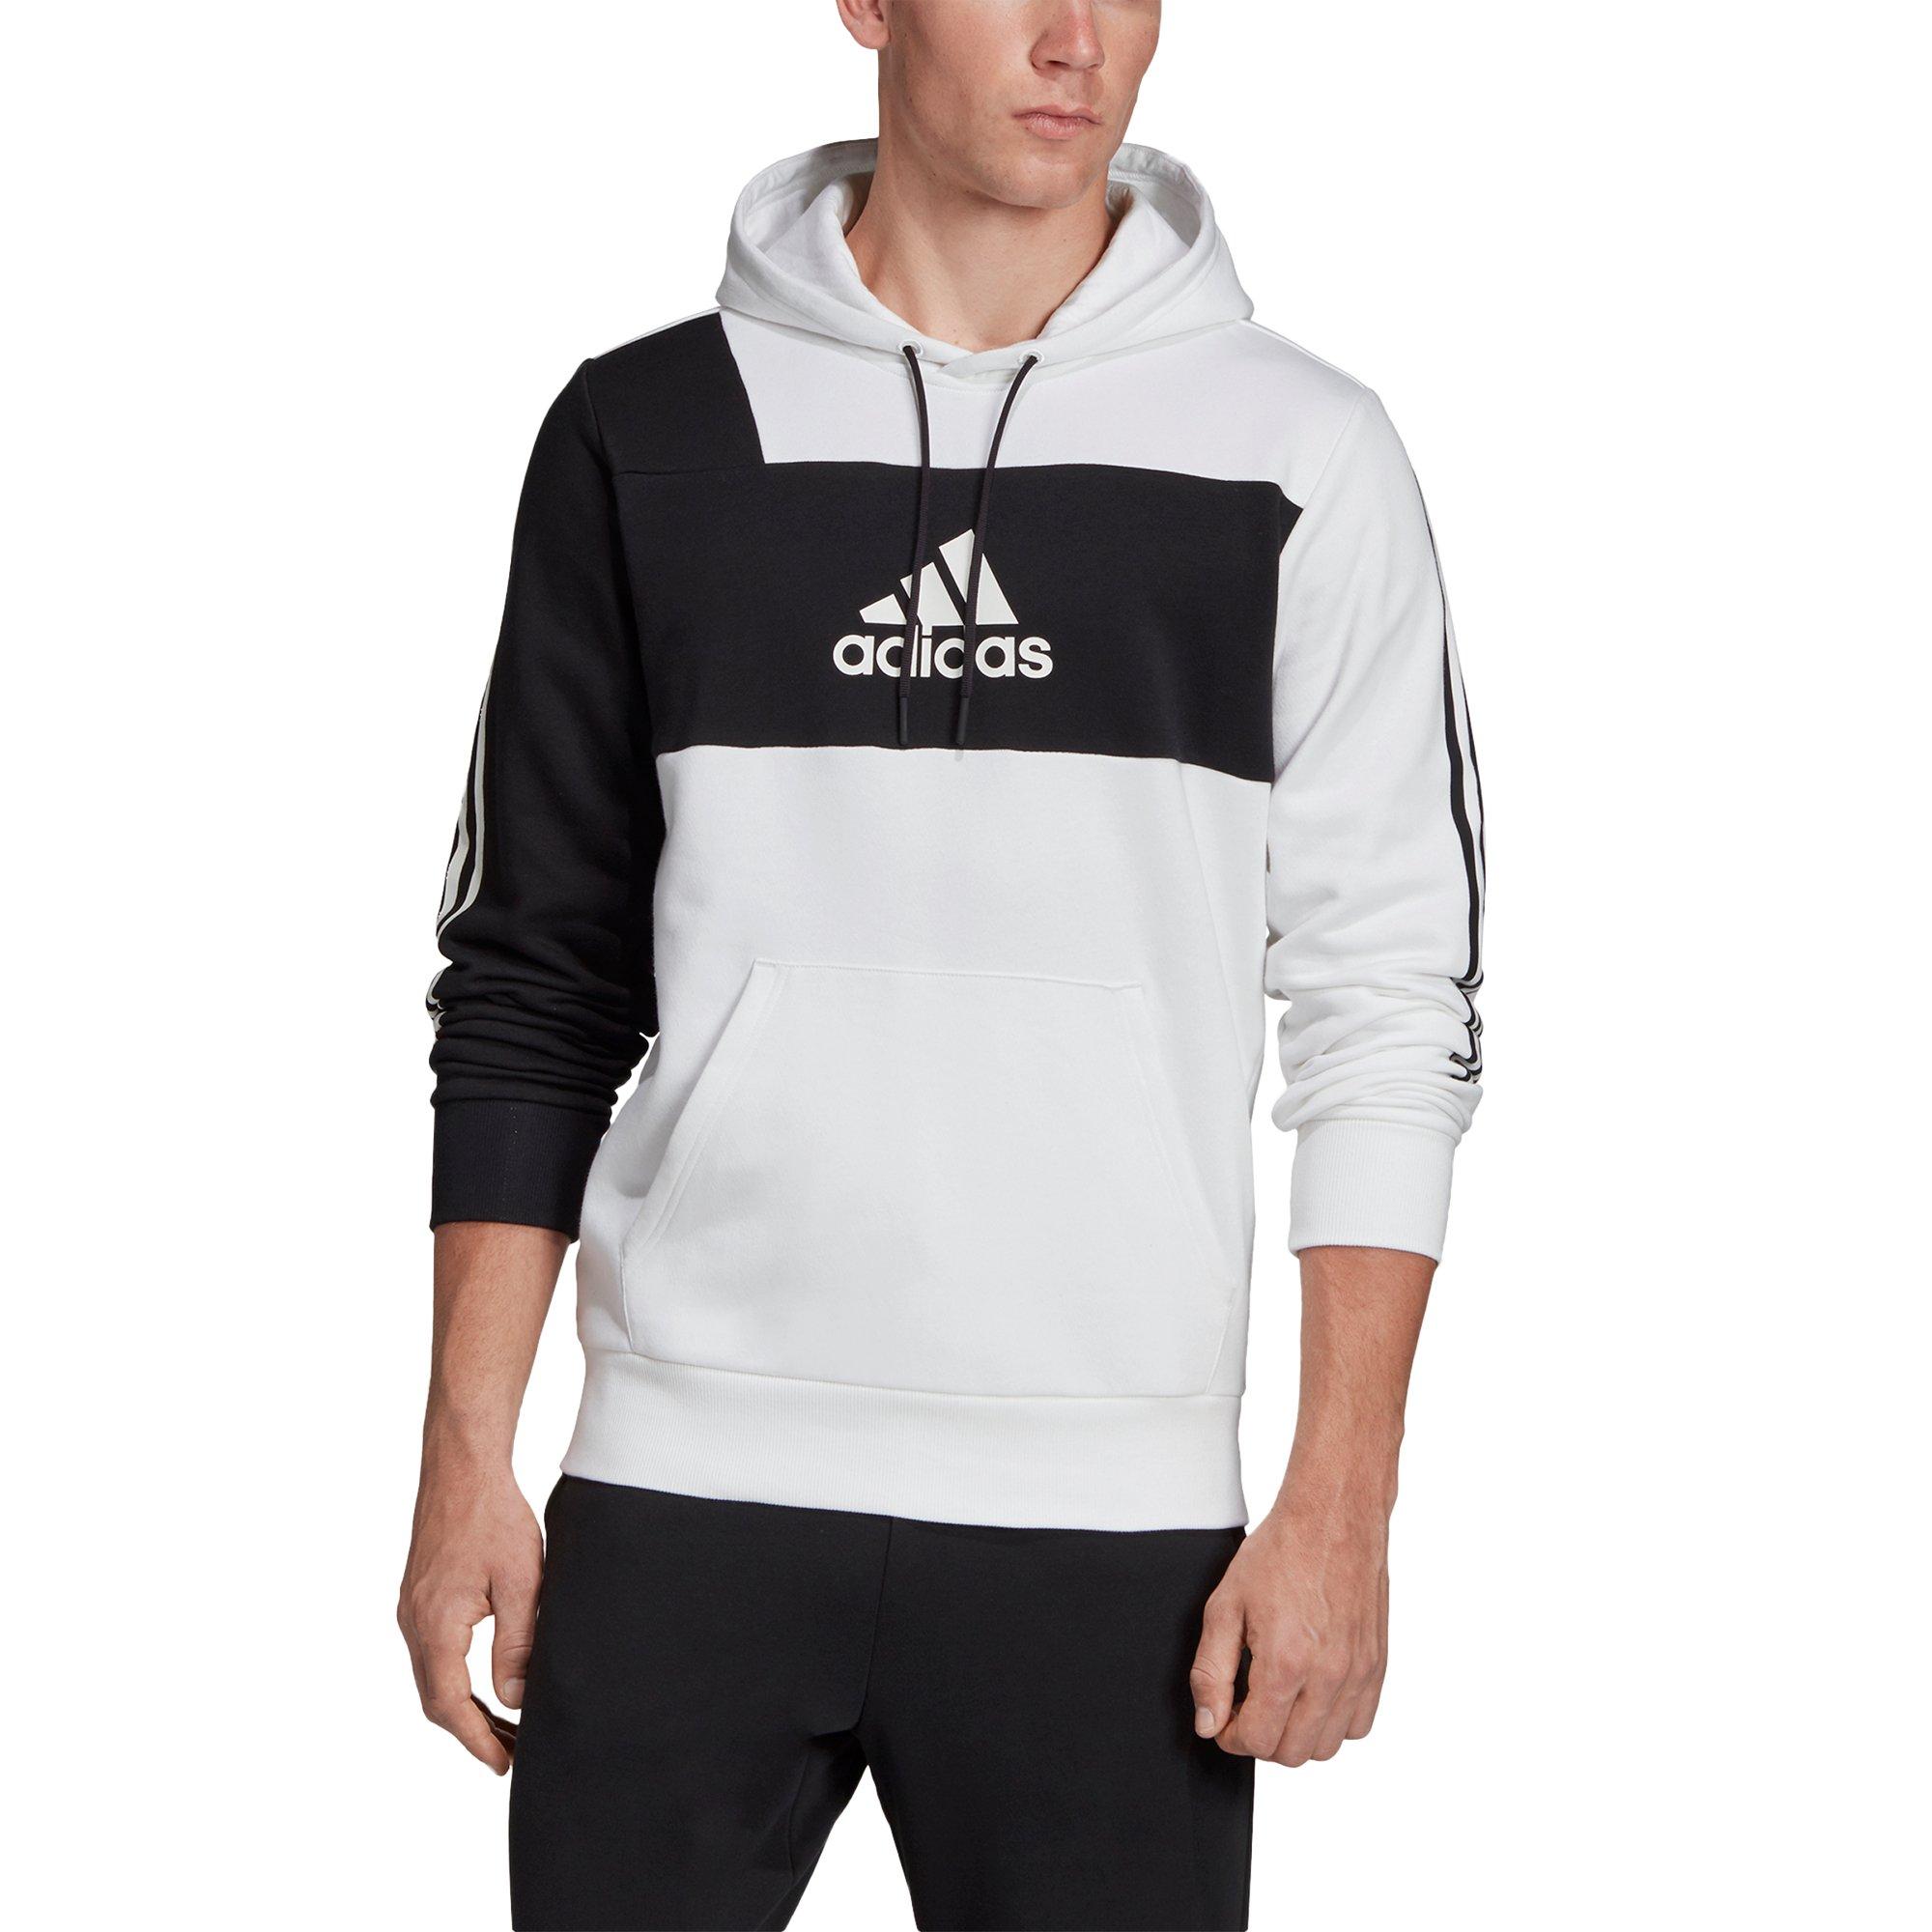 hibbett sports adidas hoodies cheap online